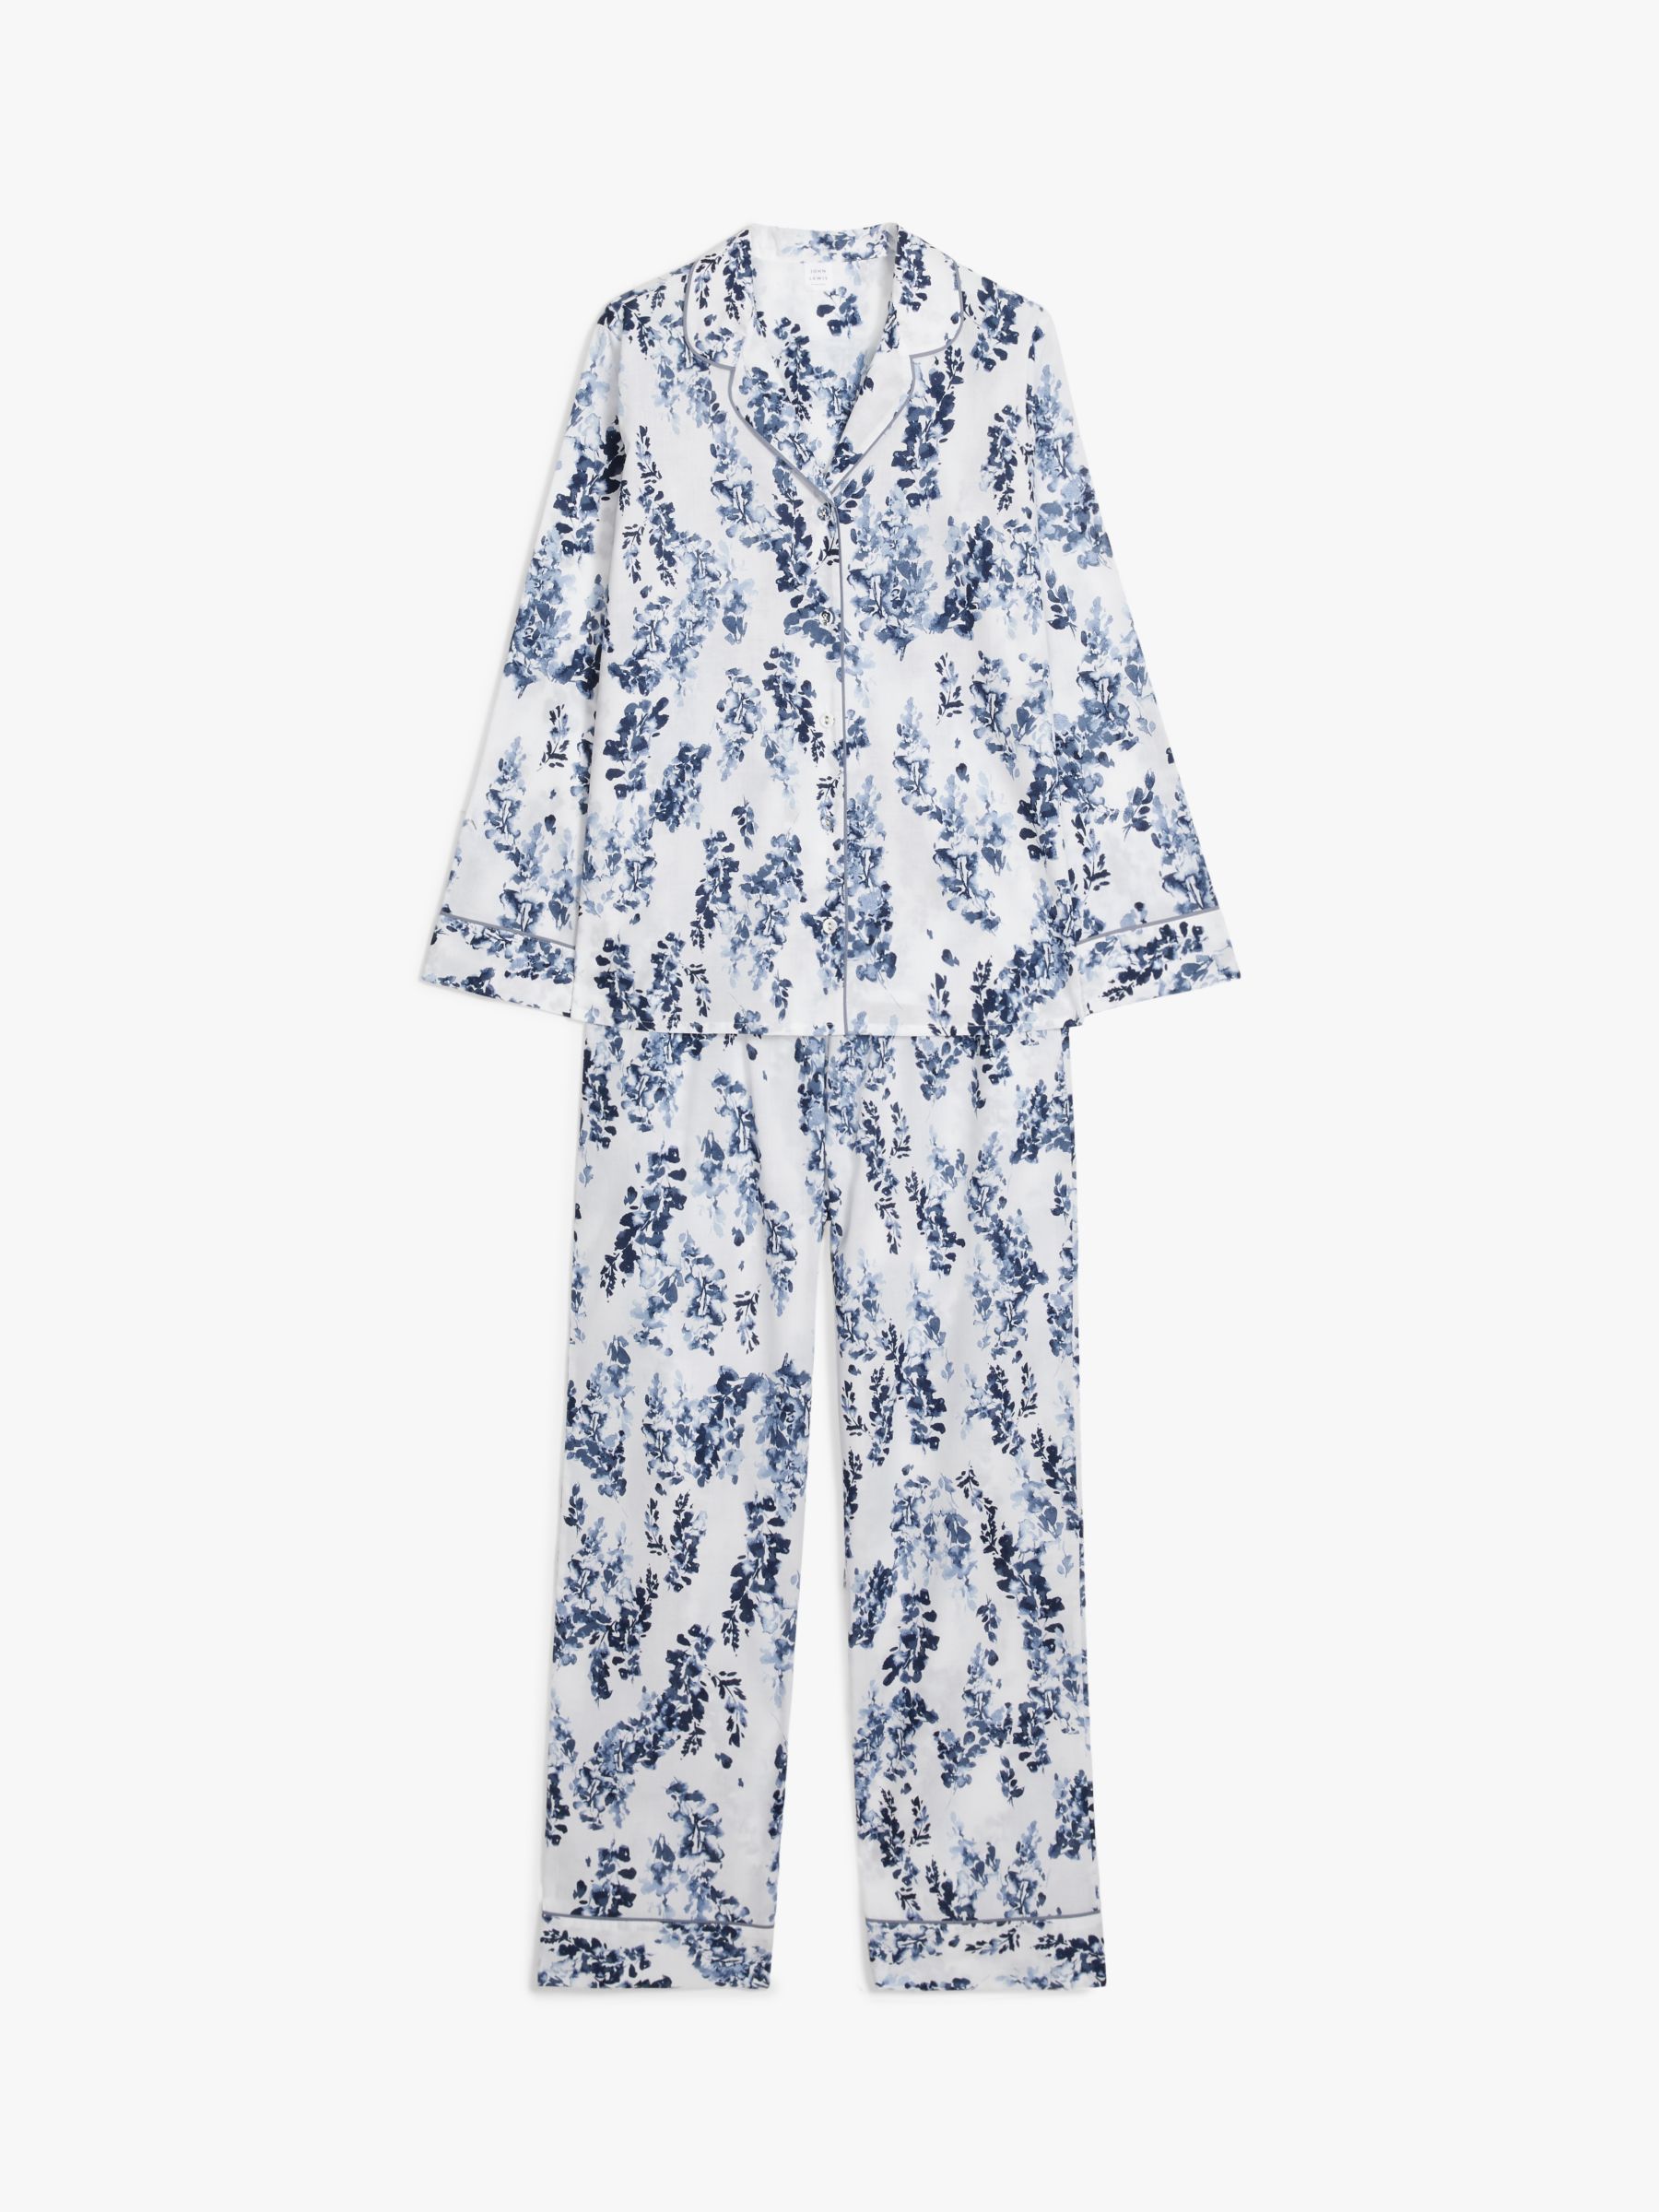 John Lewis Wisteria Cotton Pyjama Set, White/Multi, 10